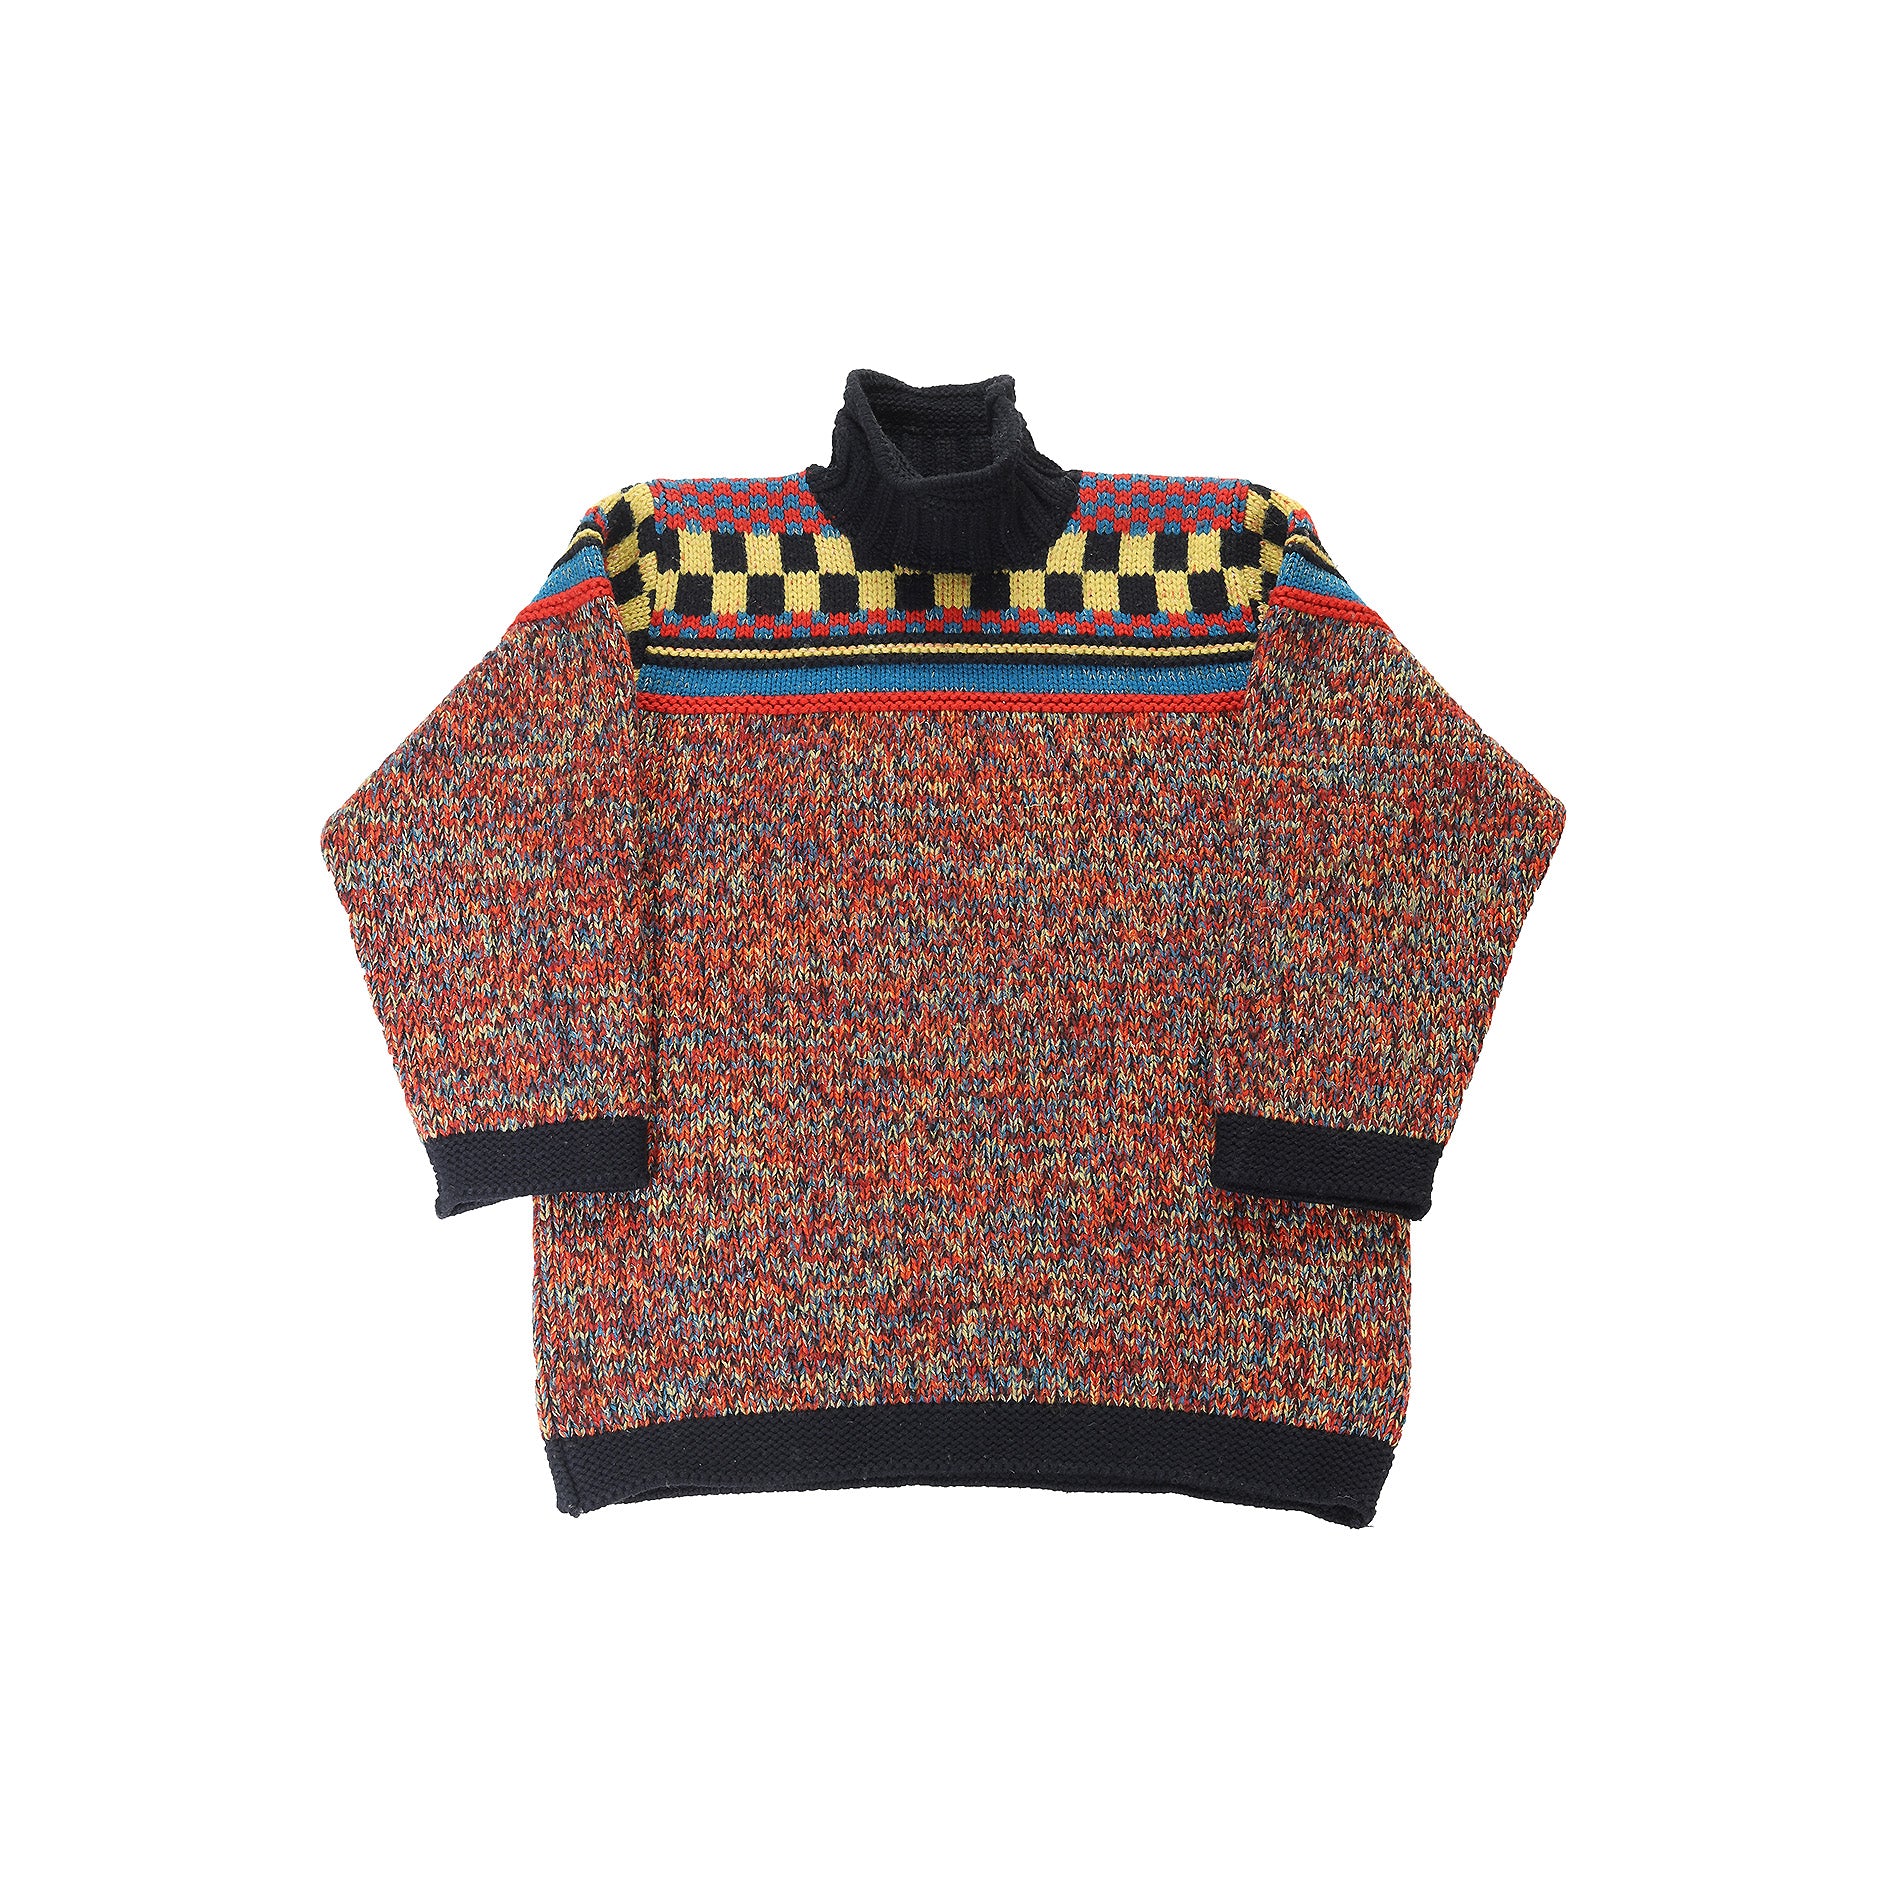 Jean Paul Gaultier FW1995 Metallic Multicolor Checkerboard Knit Sweater